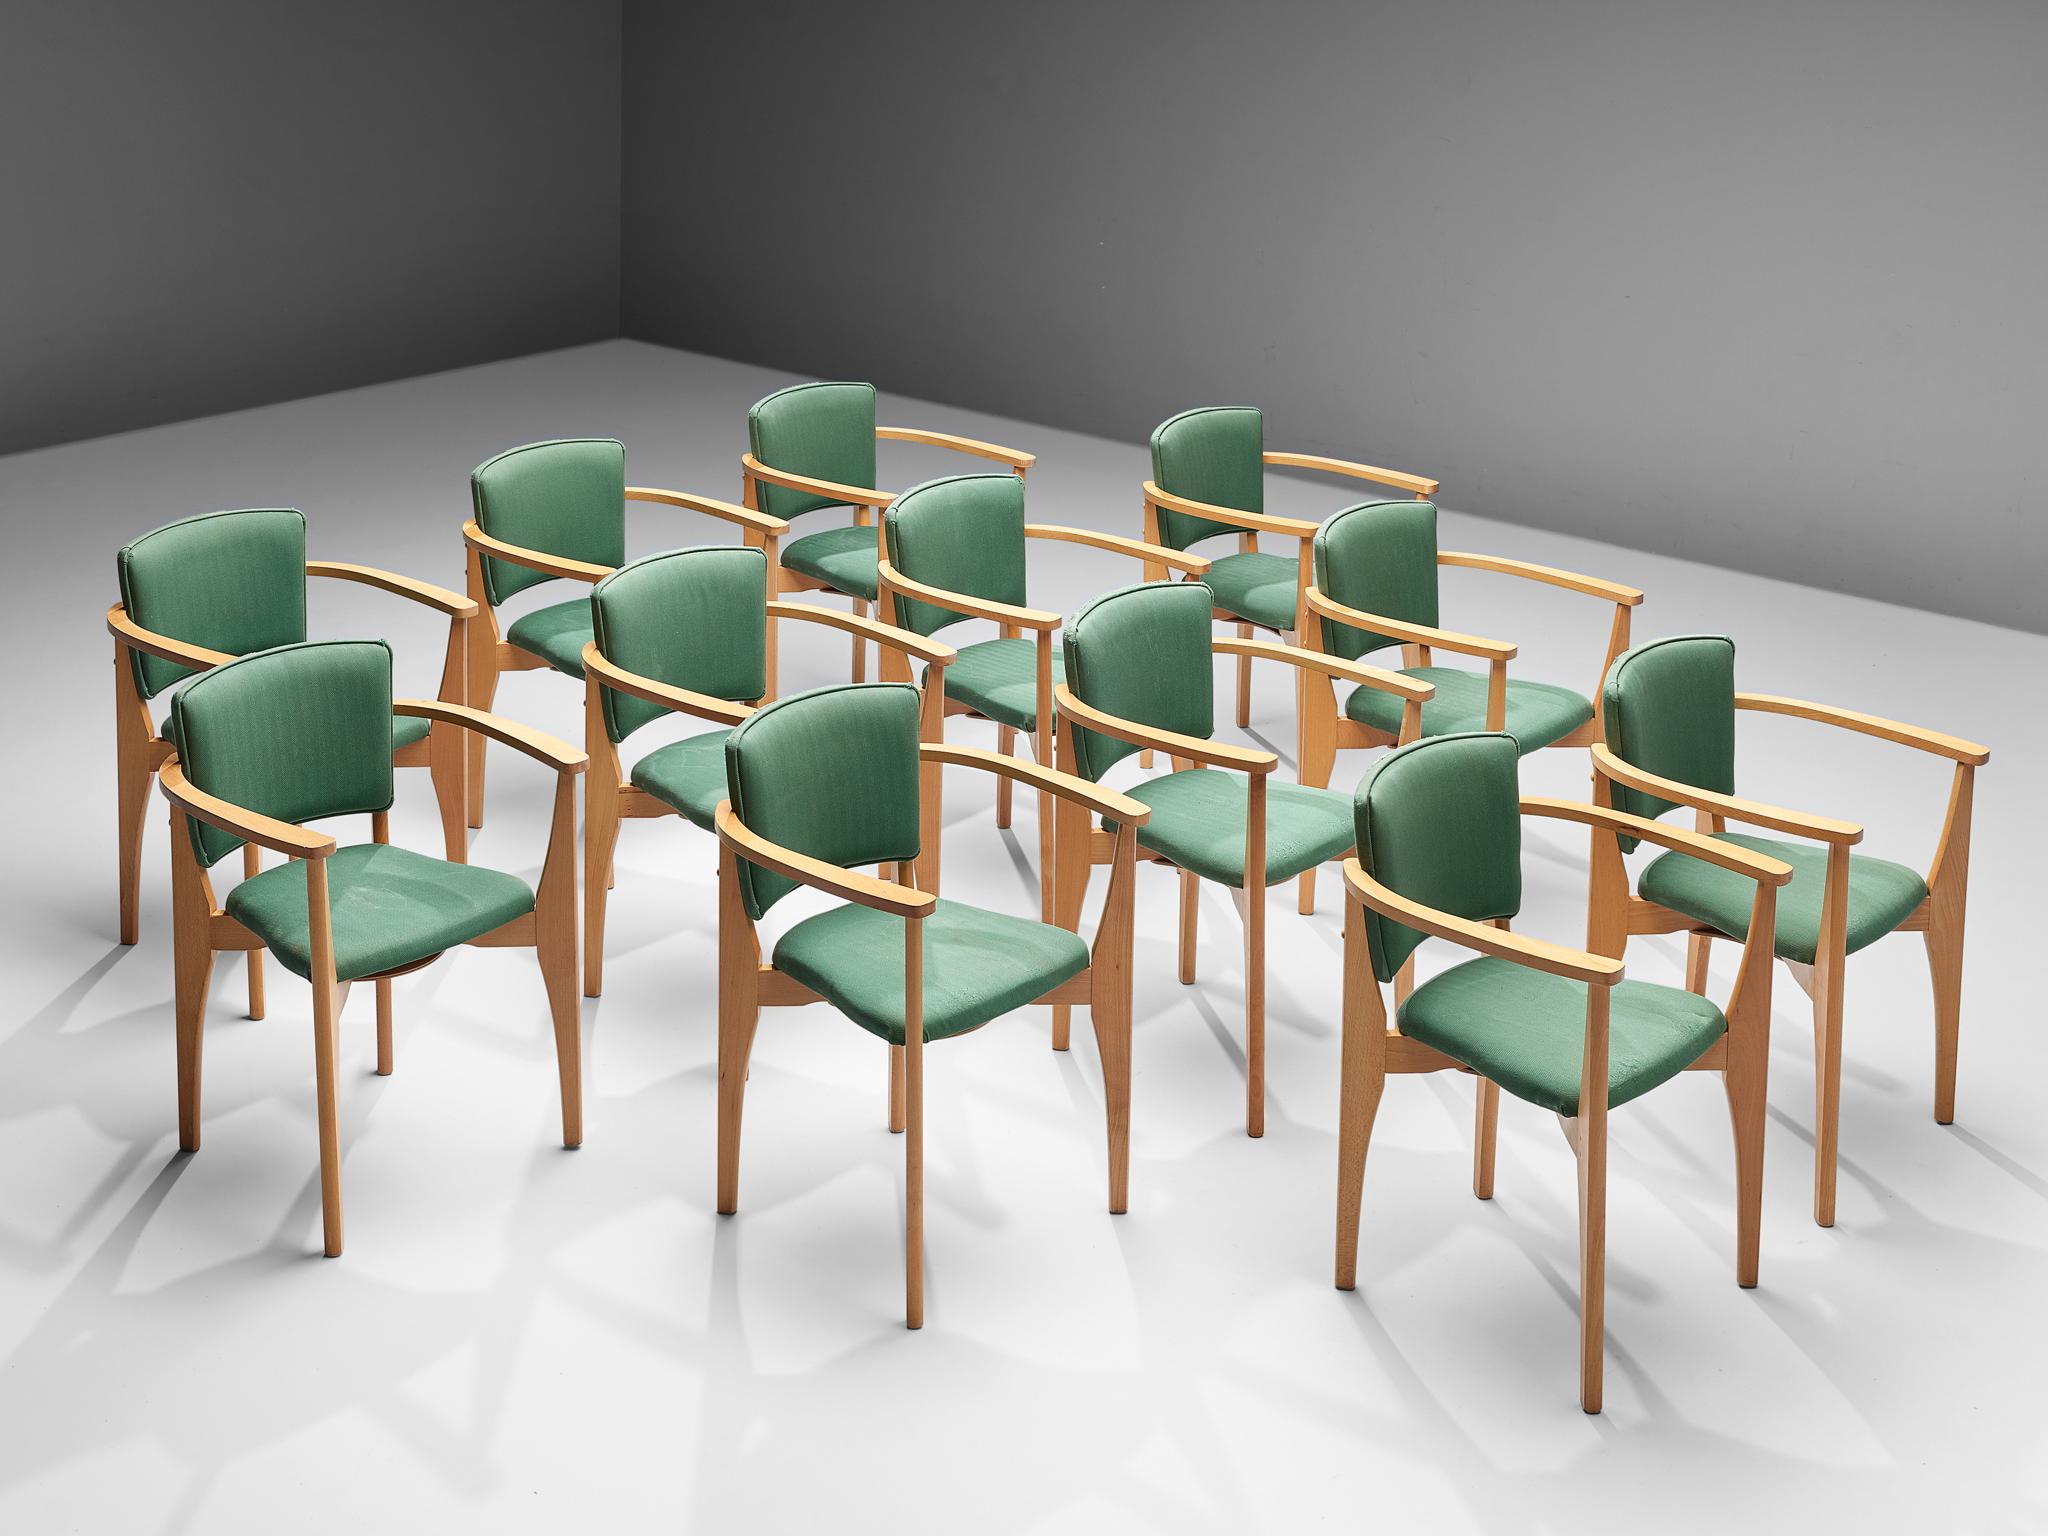 Ensemble de douze chaises de salle à manger, hêtre, tissu, Europe, années 1960

Ensemble de douze chaises de salle à manger, fabriquées en Europe dans les années 1960. Ces chaises de salle à manger sont dotées d'une structure en bois de hêtre clair.